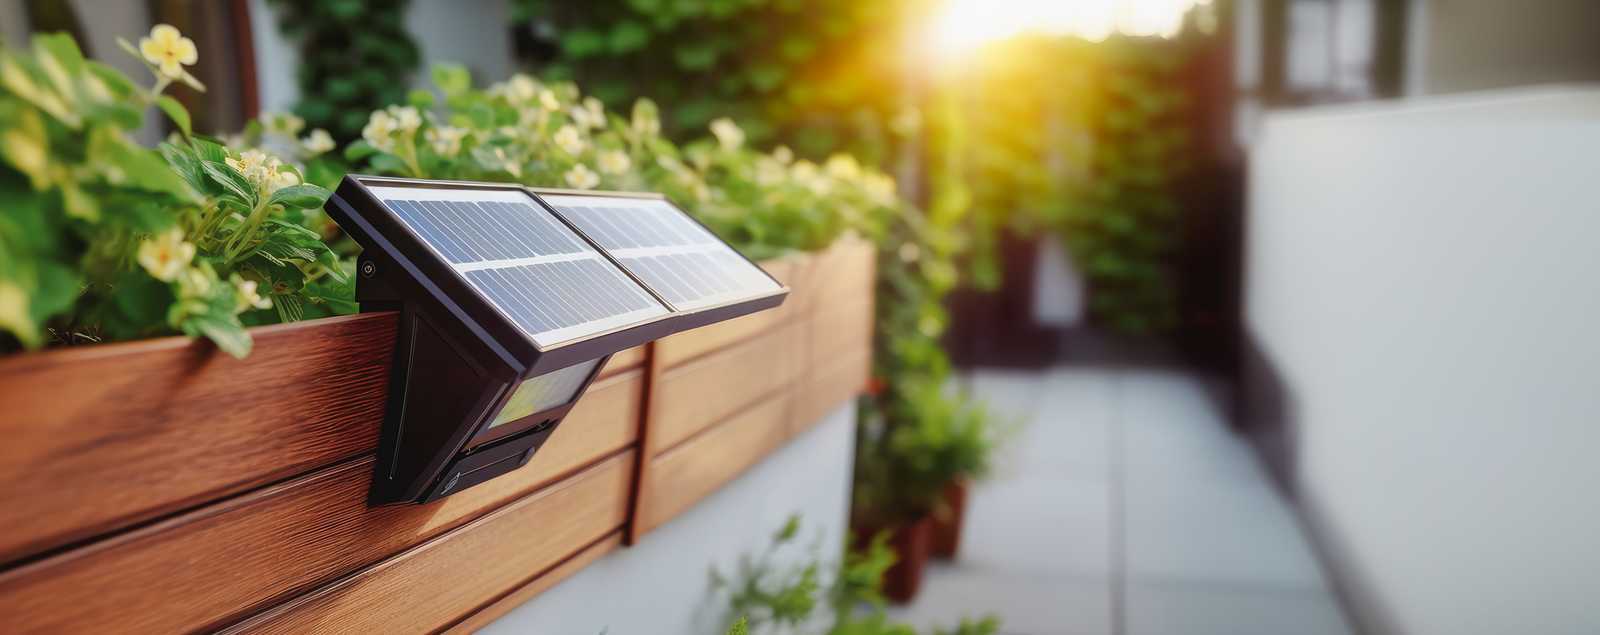 Energiesparende Solarleuchten für Ihren Bedarf